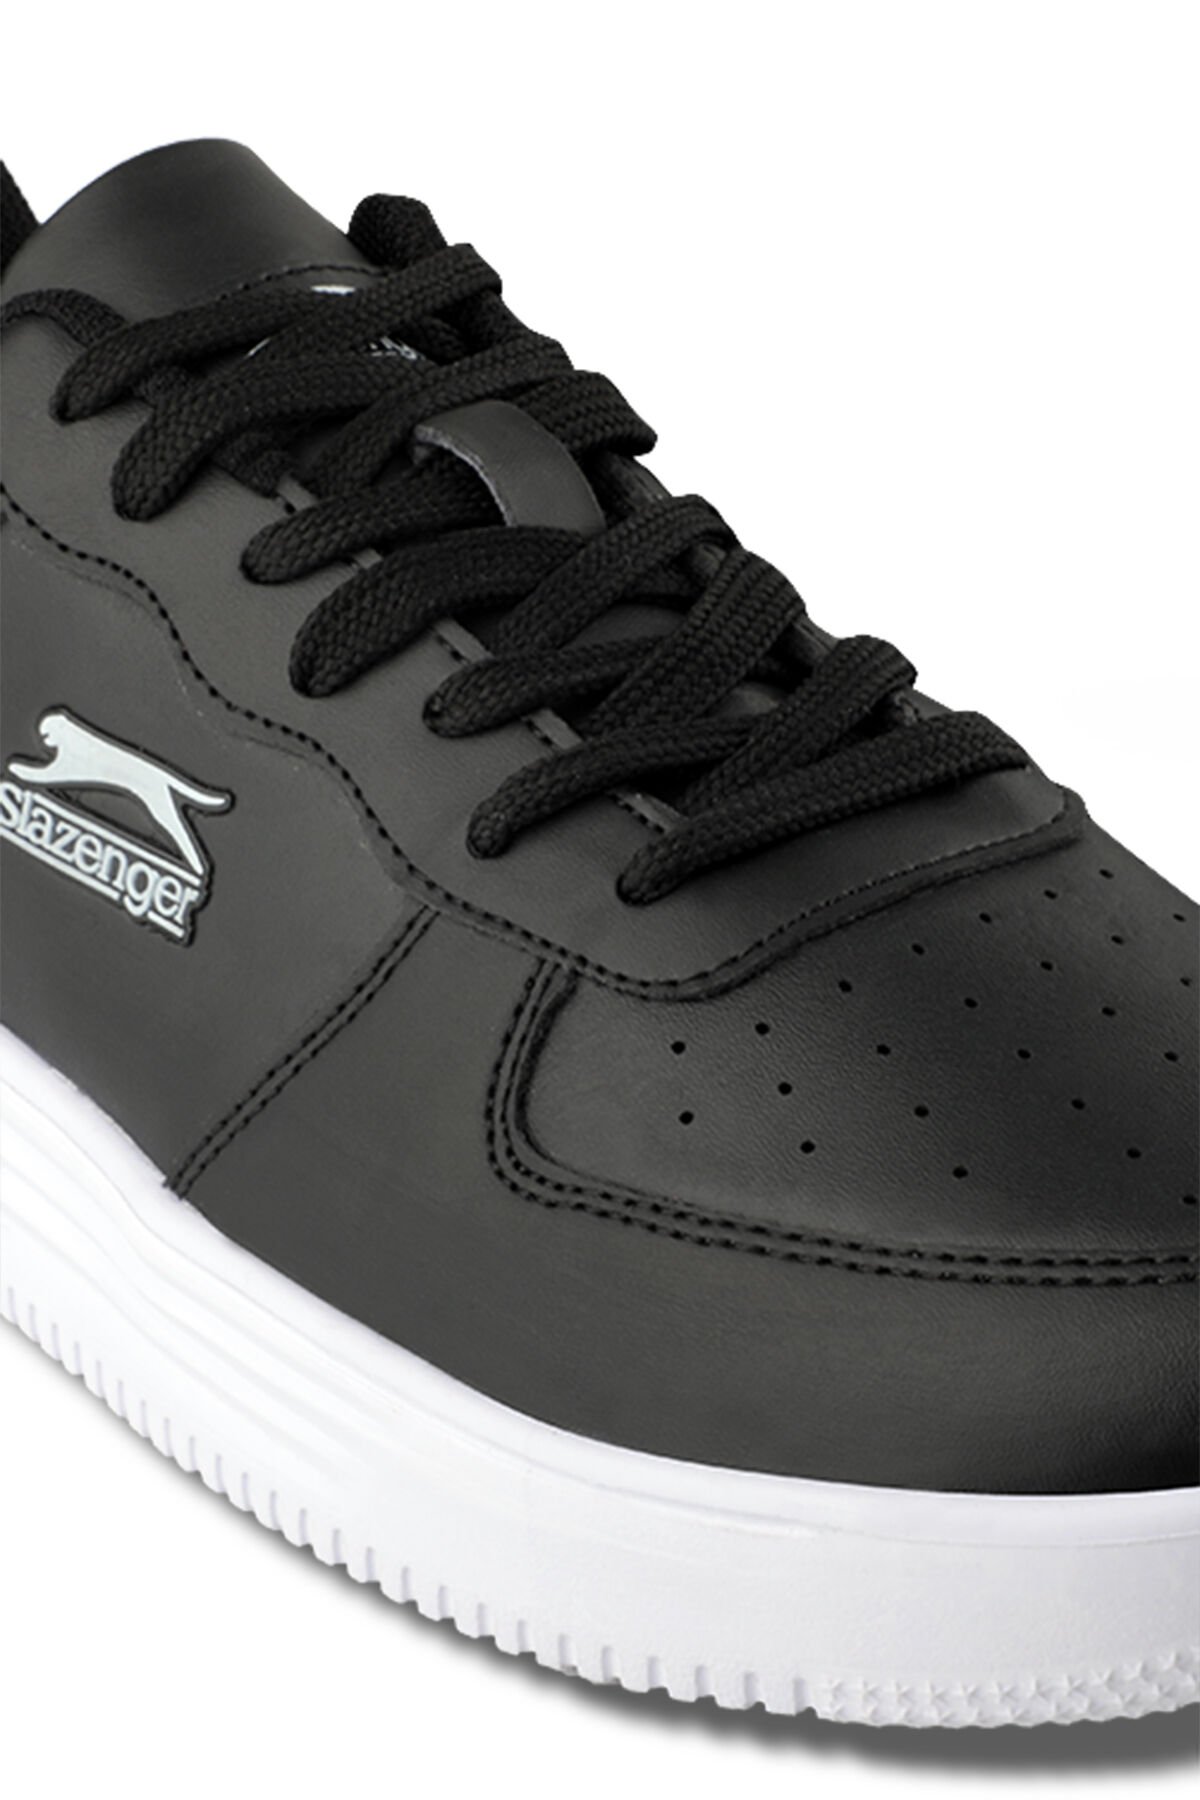 Slazenger CARBON Sneaker Erkek Ayakkabı Siyah / Beyaz - Thumbnail